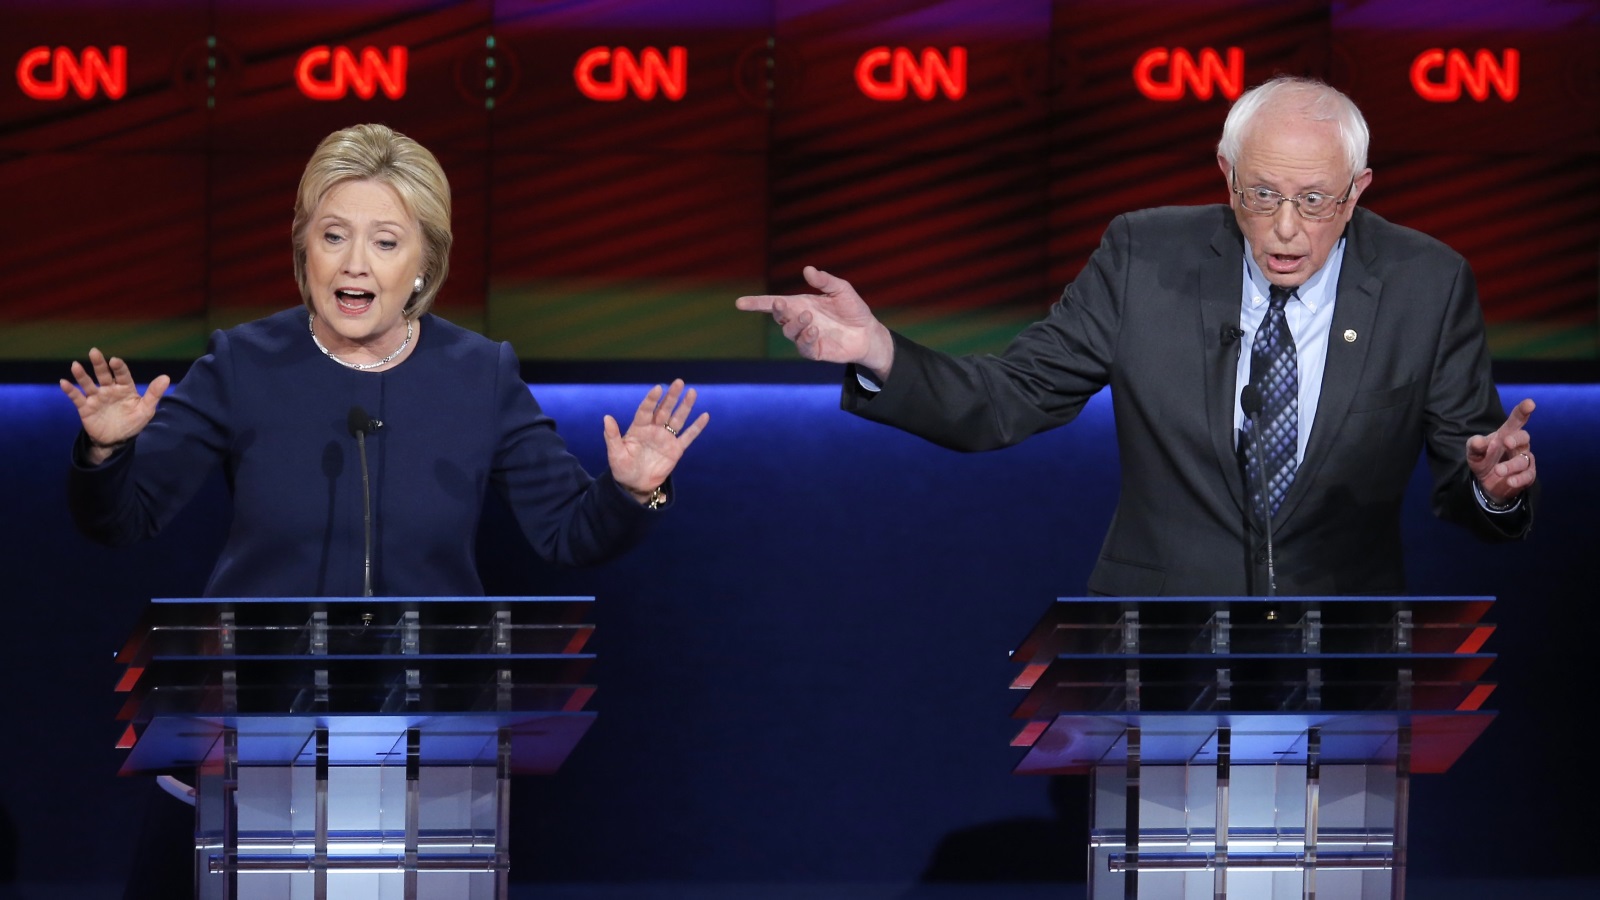 المرشحين الرئاسيين الديمقراطيين بيرني ساندرز وهيلاري كلينتون؛ أثناء مناظرة حزبية جرت بينهما في شهر مارس من عام 2016.